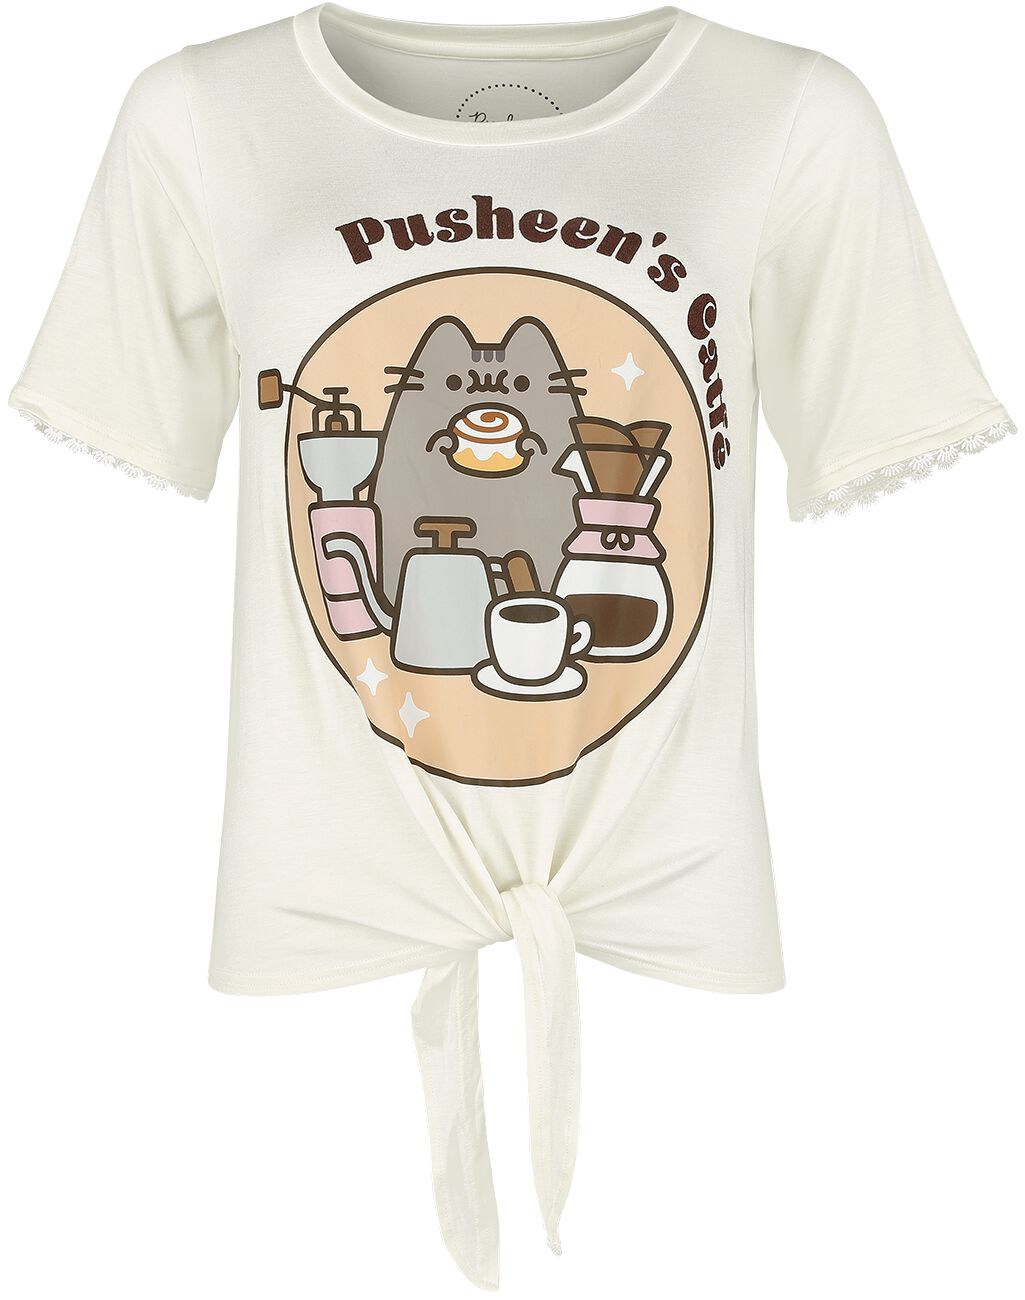 T-Shirt Manches courtes de Pusheen - Meowcaron - S à XXL - pour Femme - gris blanc